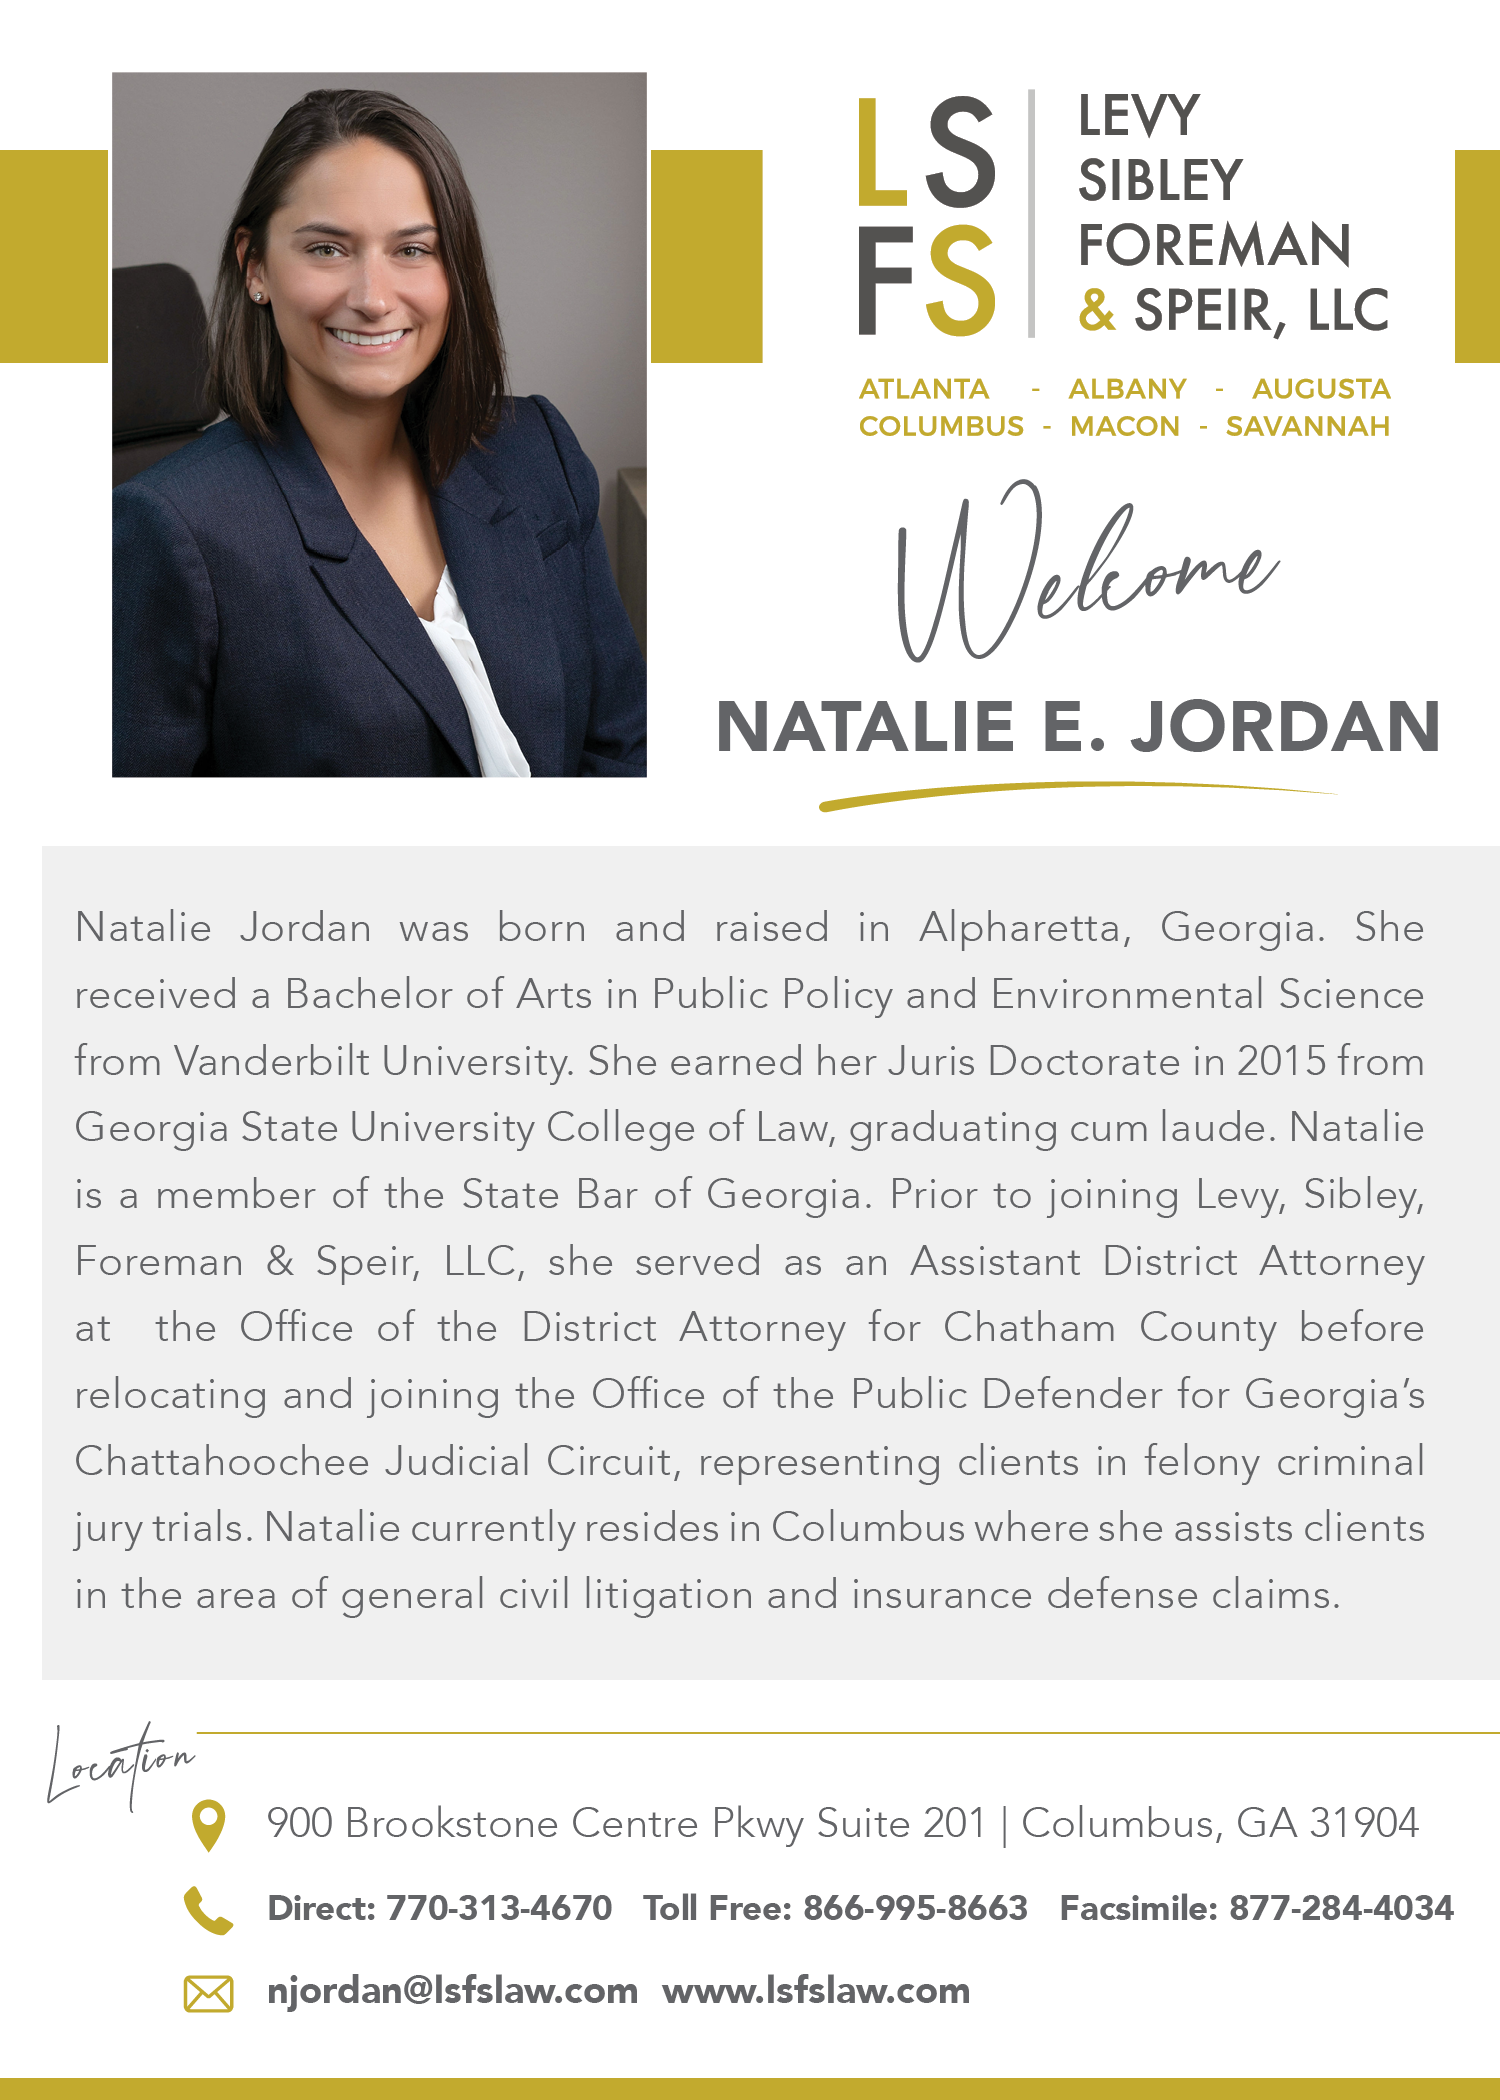 Natalie E. Jordan